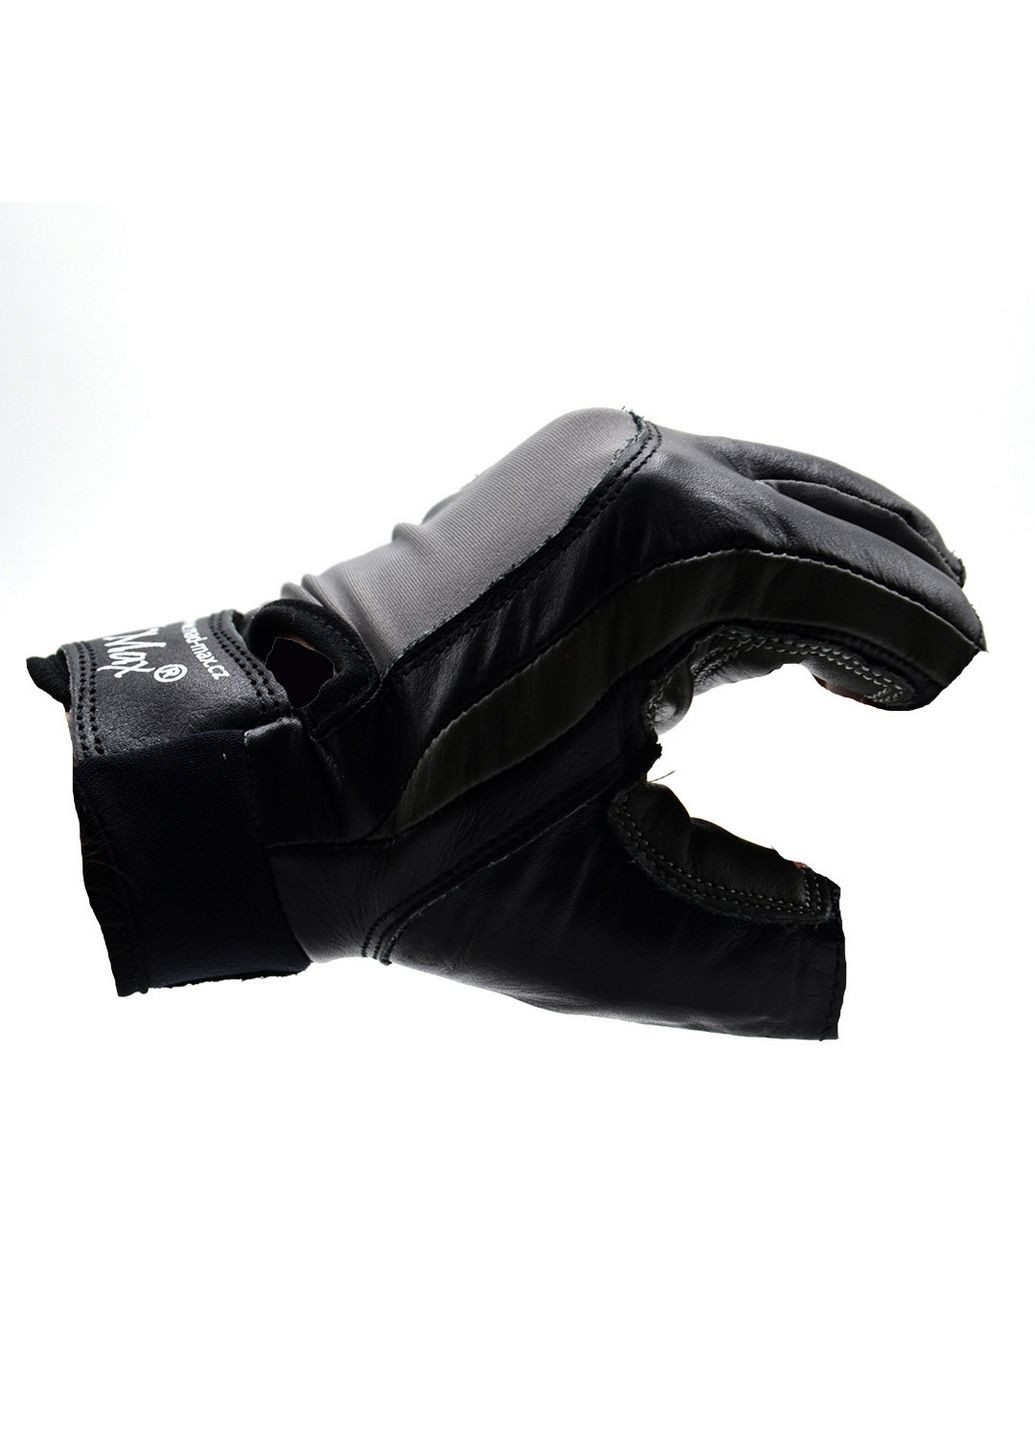 Унисекс перчатки для фитнеса L Mad Max (279321245)